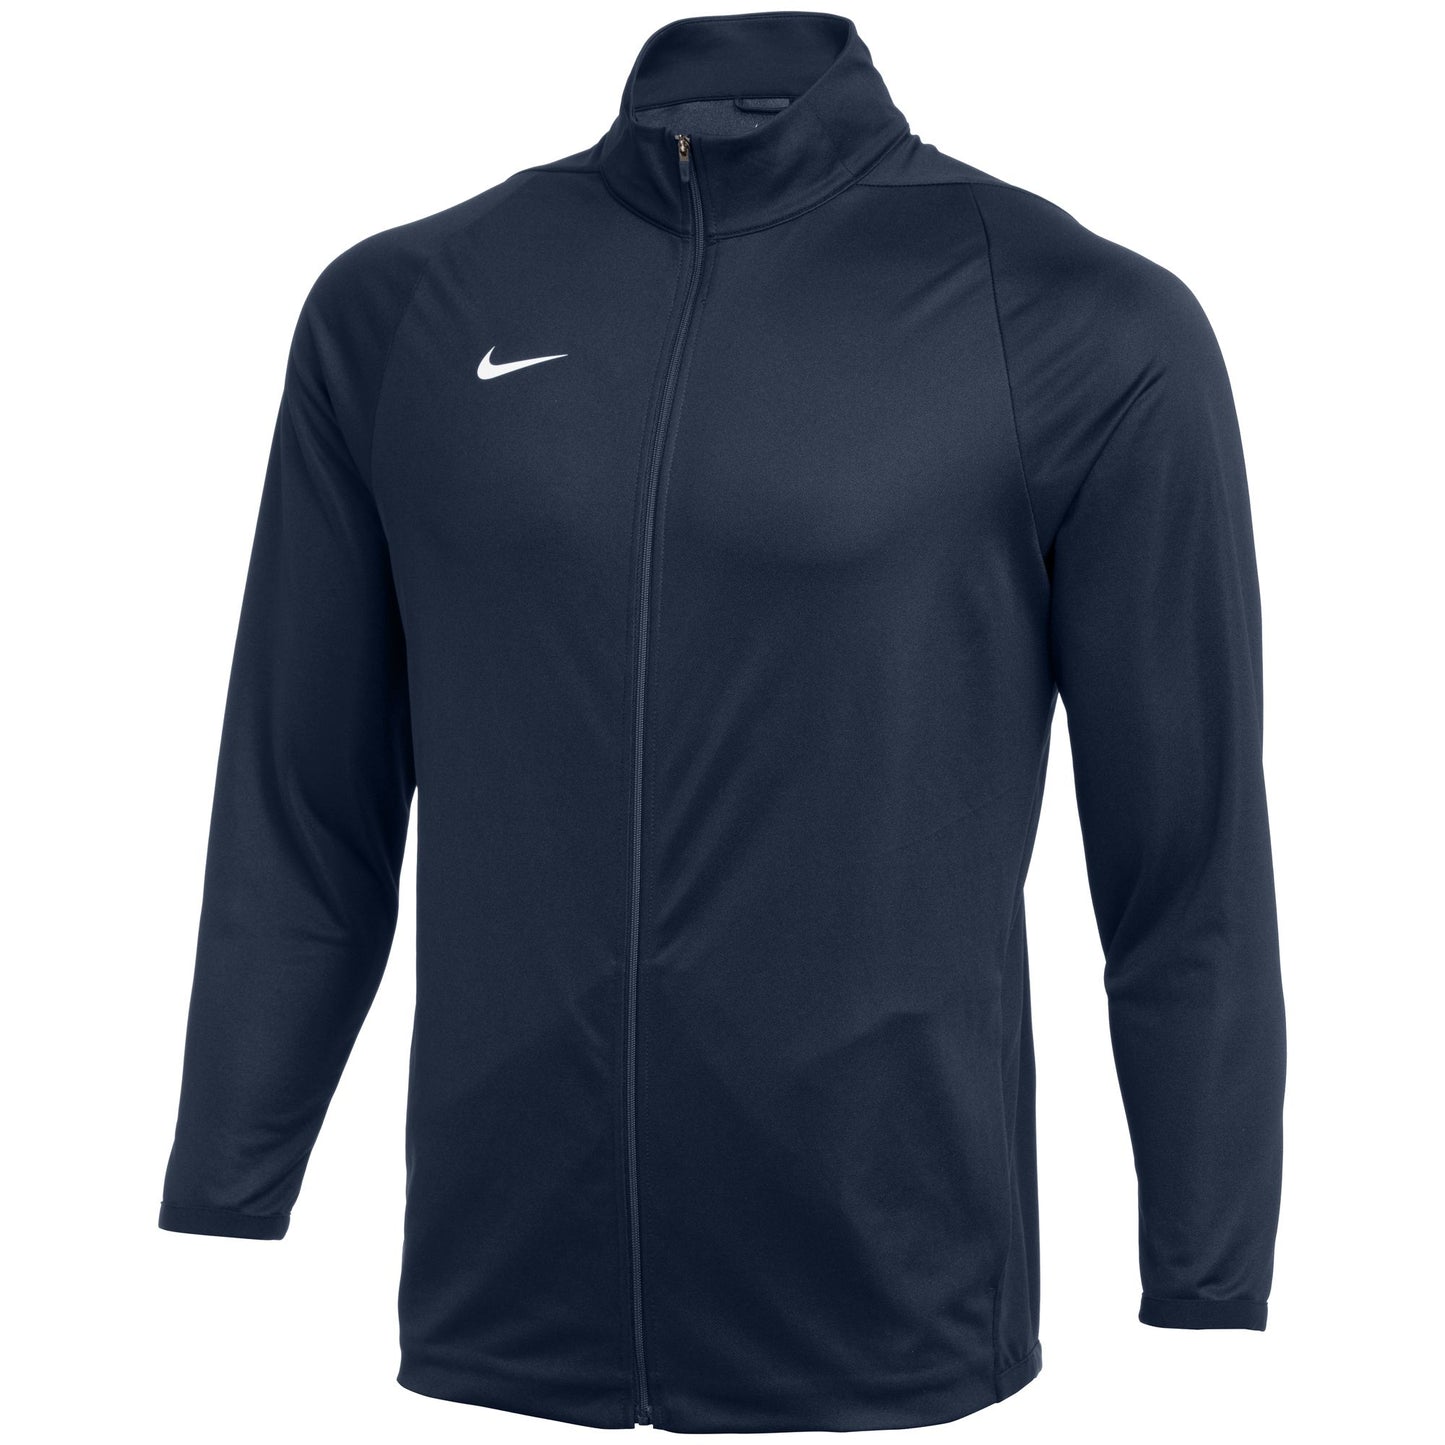 Nike Epic Jacket 2.0-Mens